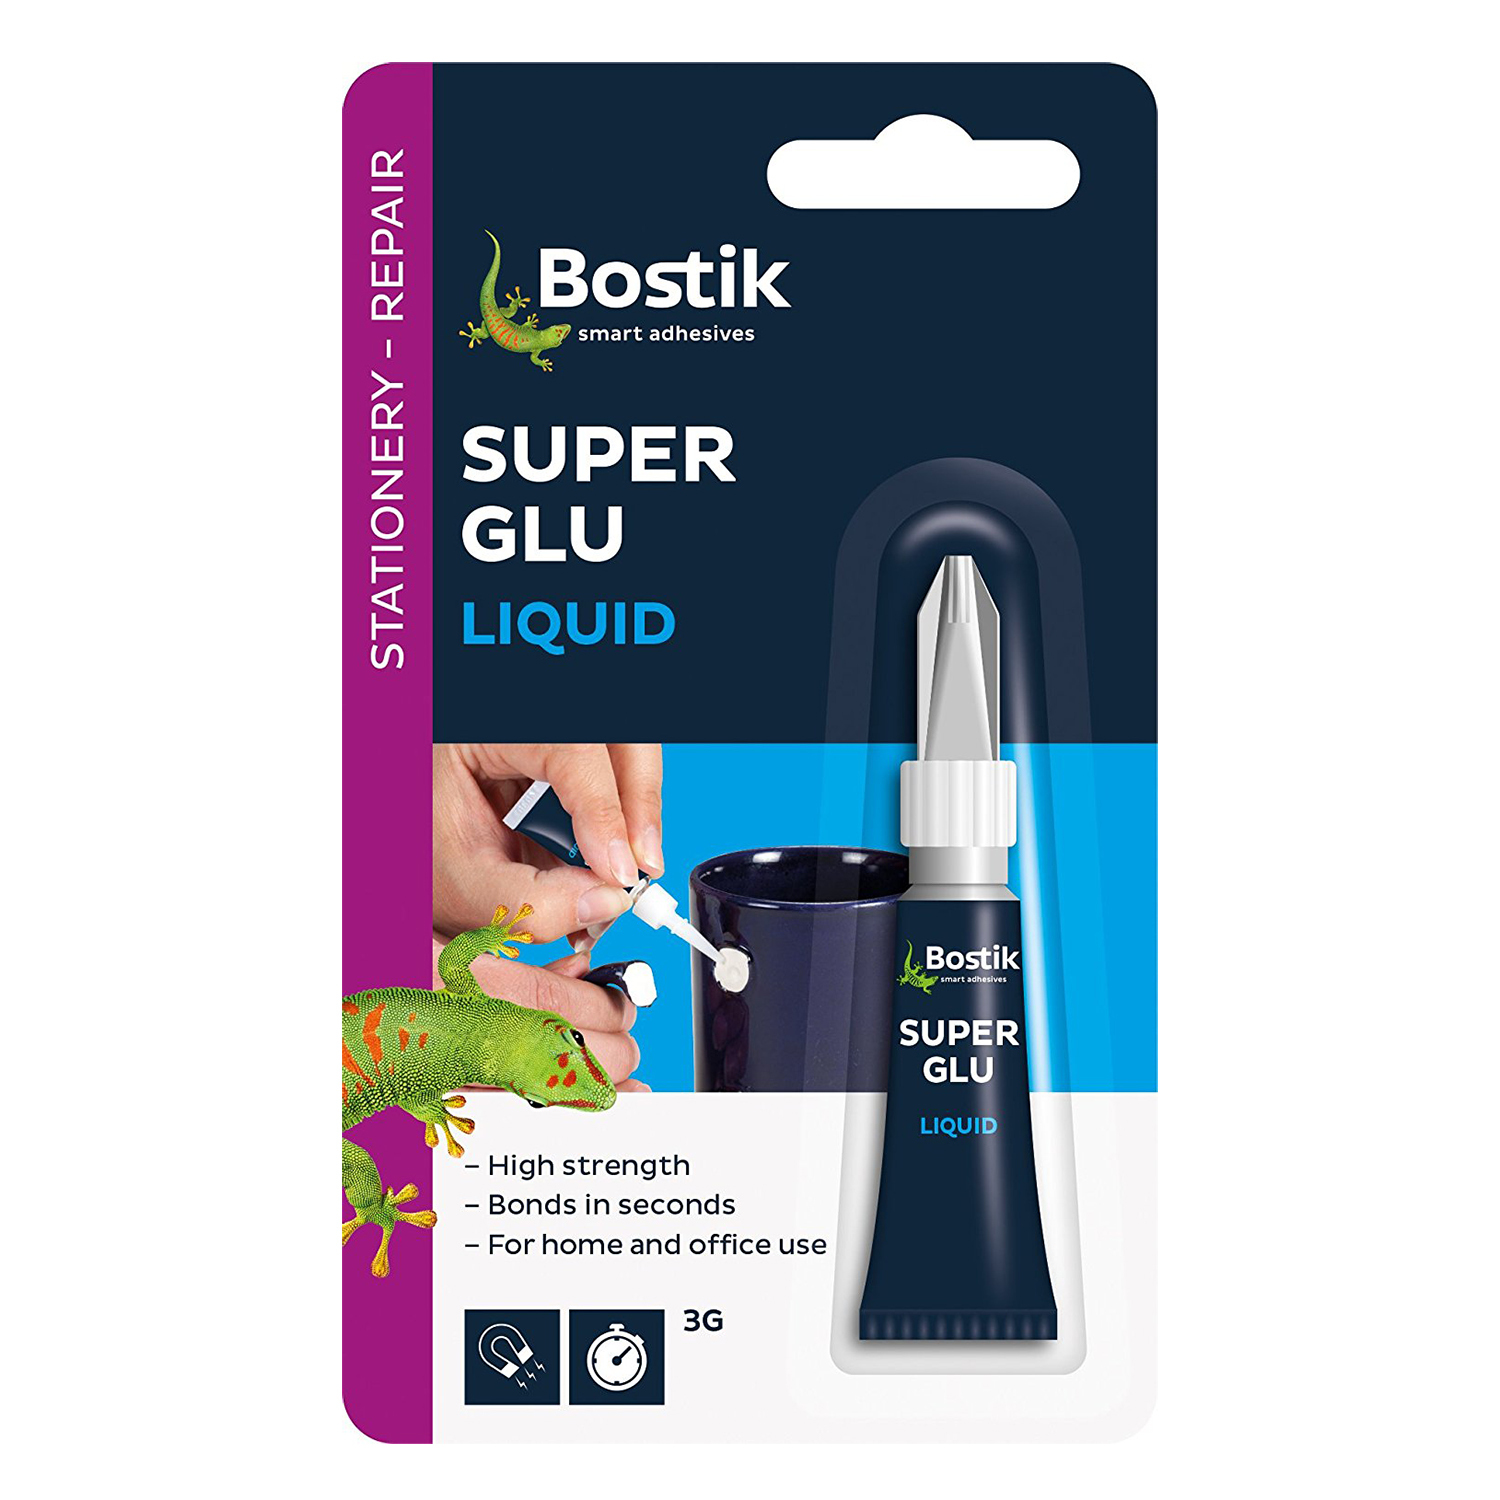 Bostik Smart Adhesive Super Glue Liquid Image